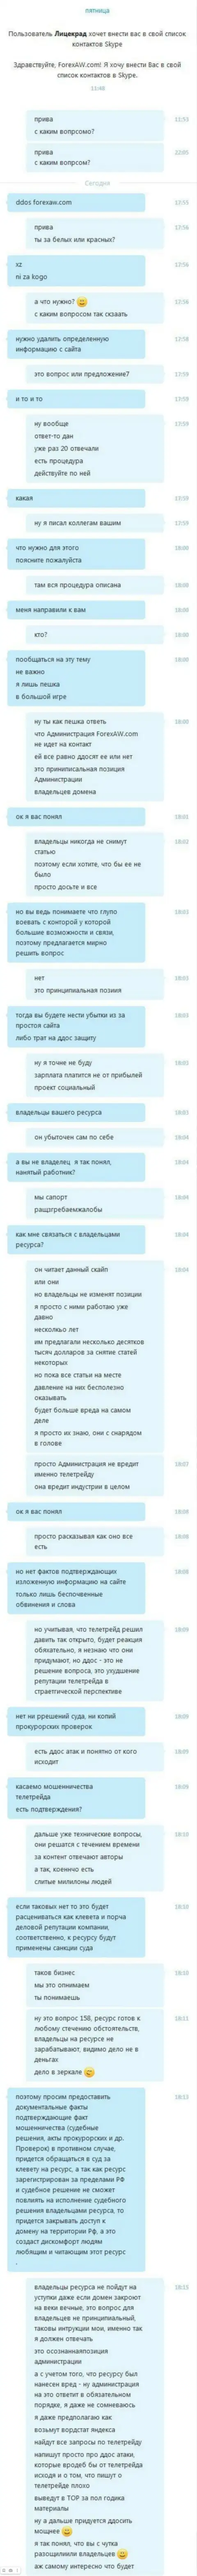 Переписка с неким представителем мошенников TeleTrade Ru, требующим удалить обзорный материал